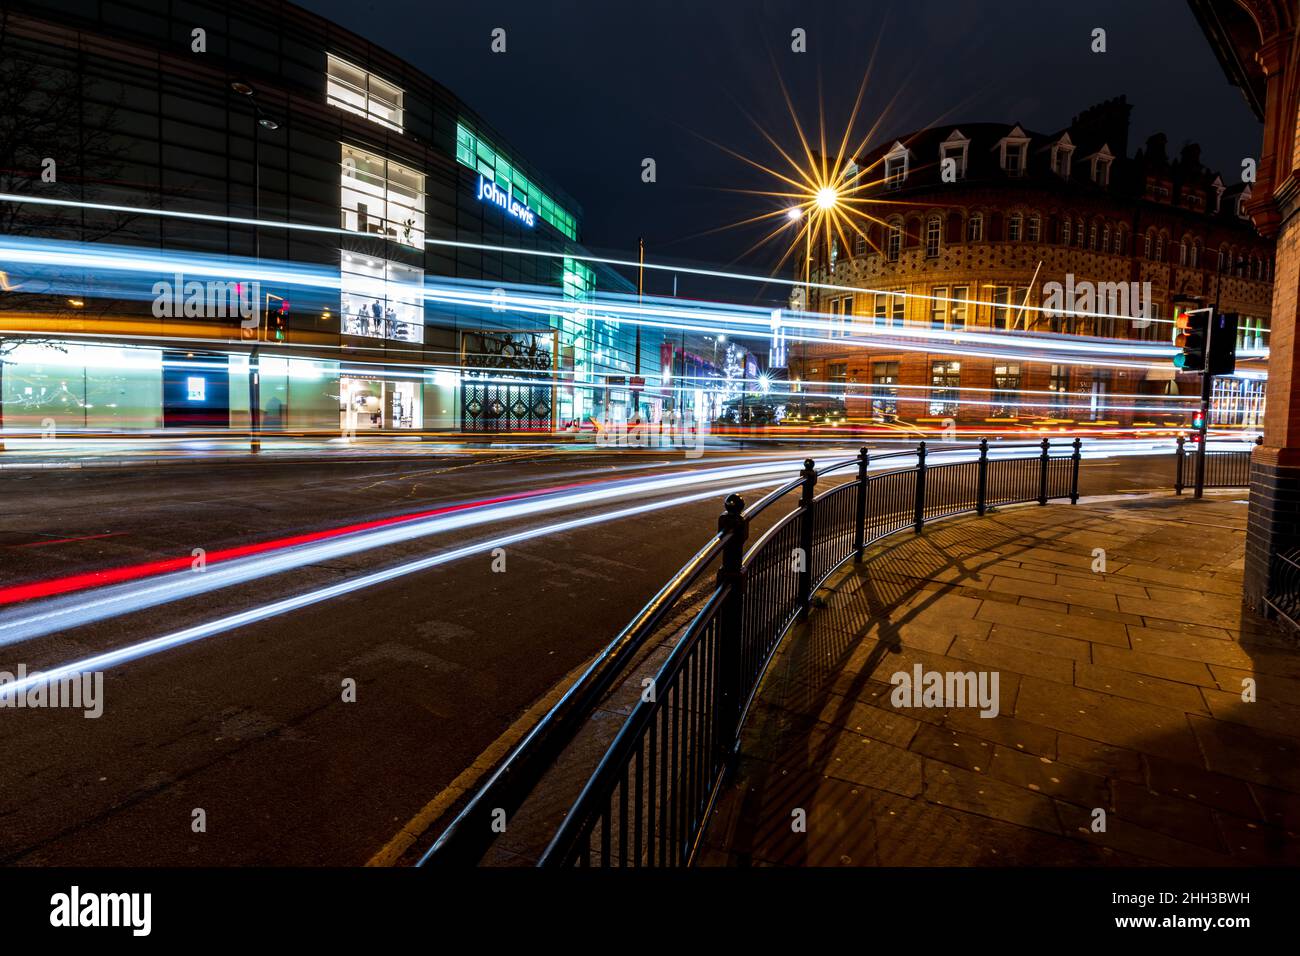 Fotografías nocturnas de Liverpool, mostrando los vibrantes colores de nuestra ciudad. Foto de stock